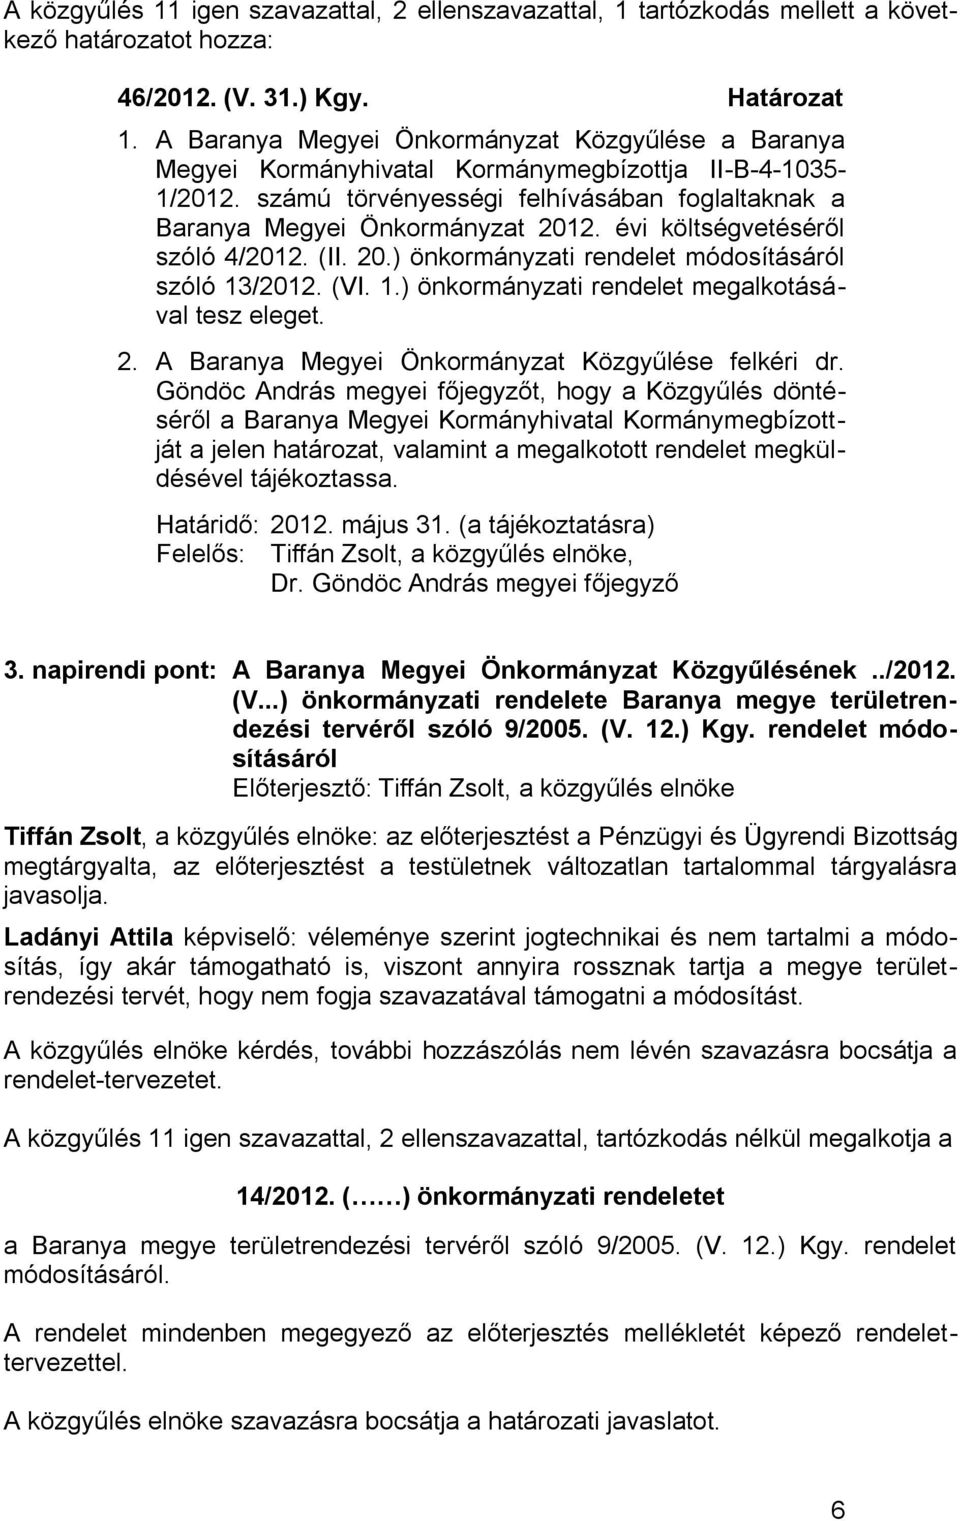 évi költségvetéséről szóló 4/2012. (II. 20.) önkormányzati rendelet módosításáról szóló 13/2012. (VI. 1.) önkormányzati rendelet megalkotásával tesz eleget. 2. A Baranya Megyei Önkormányzat Közgyűlése felkéri dr.